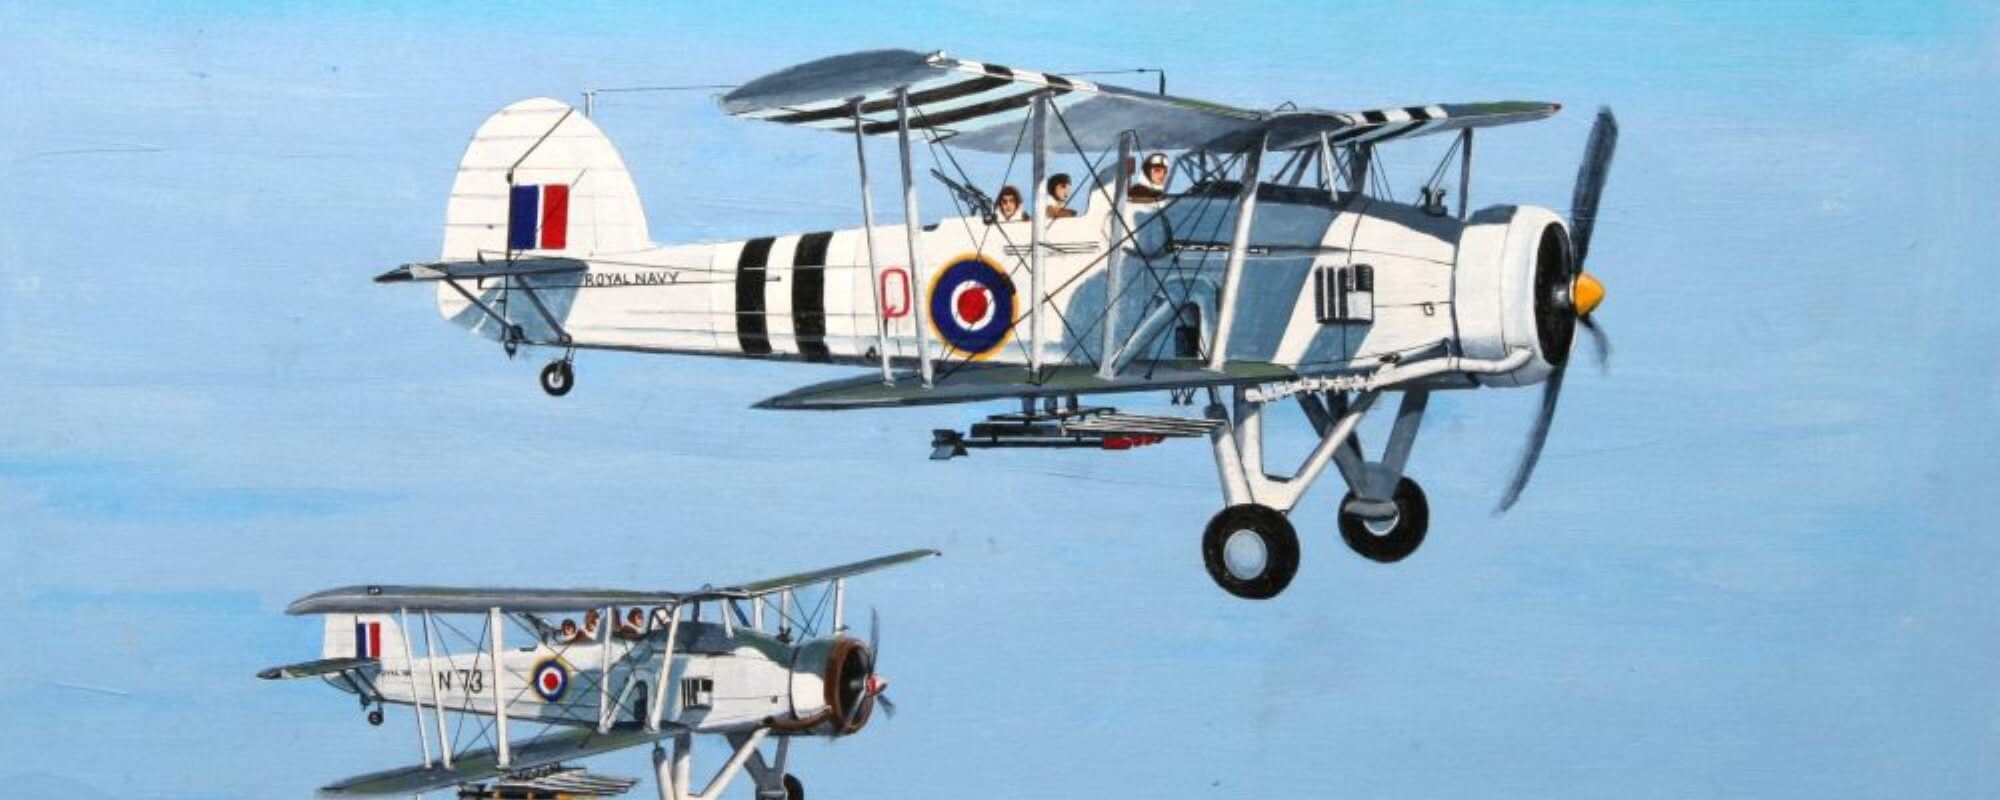 Aviation Artwork of Local Hermanus Artist Derrick Dickens